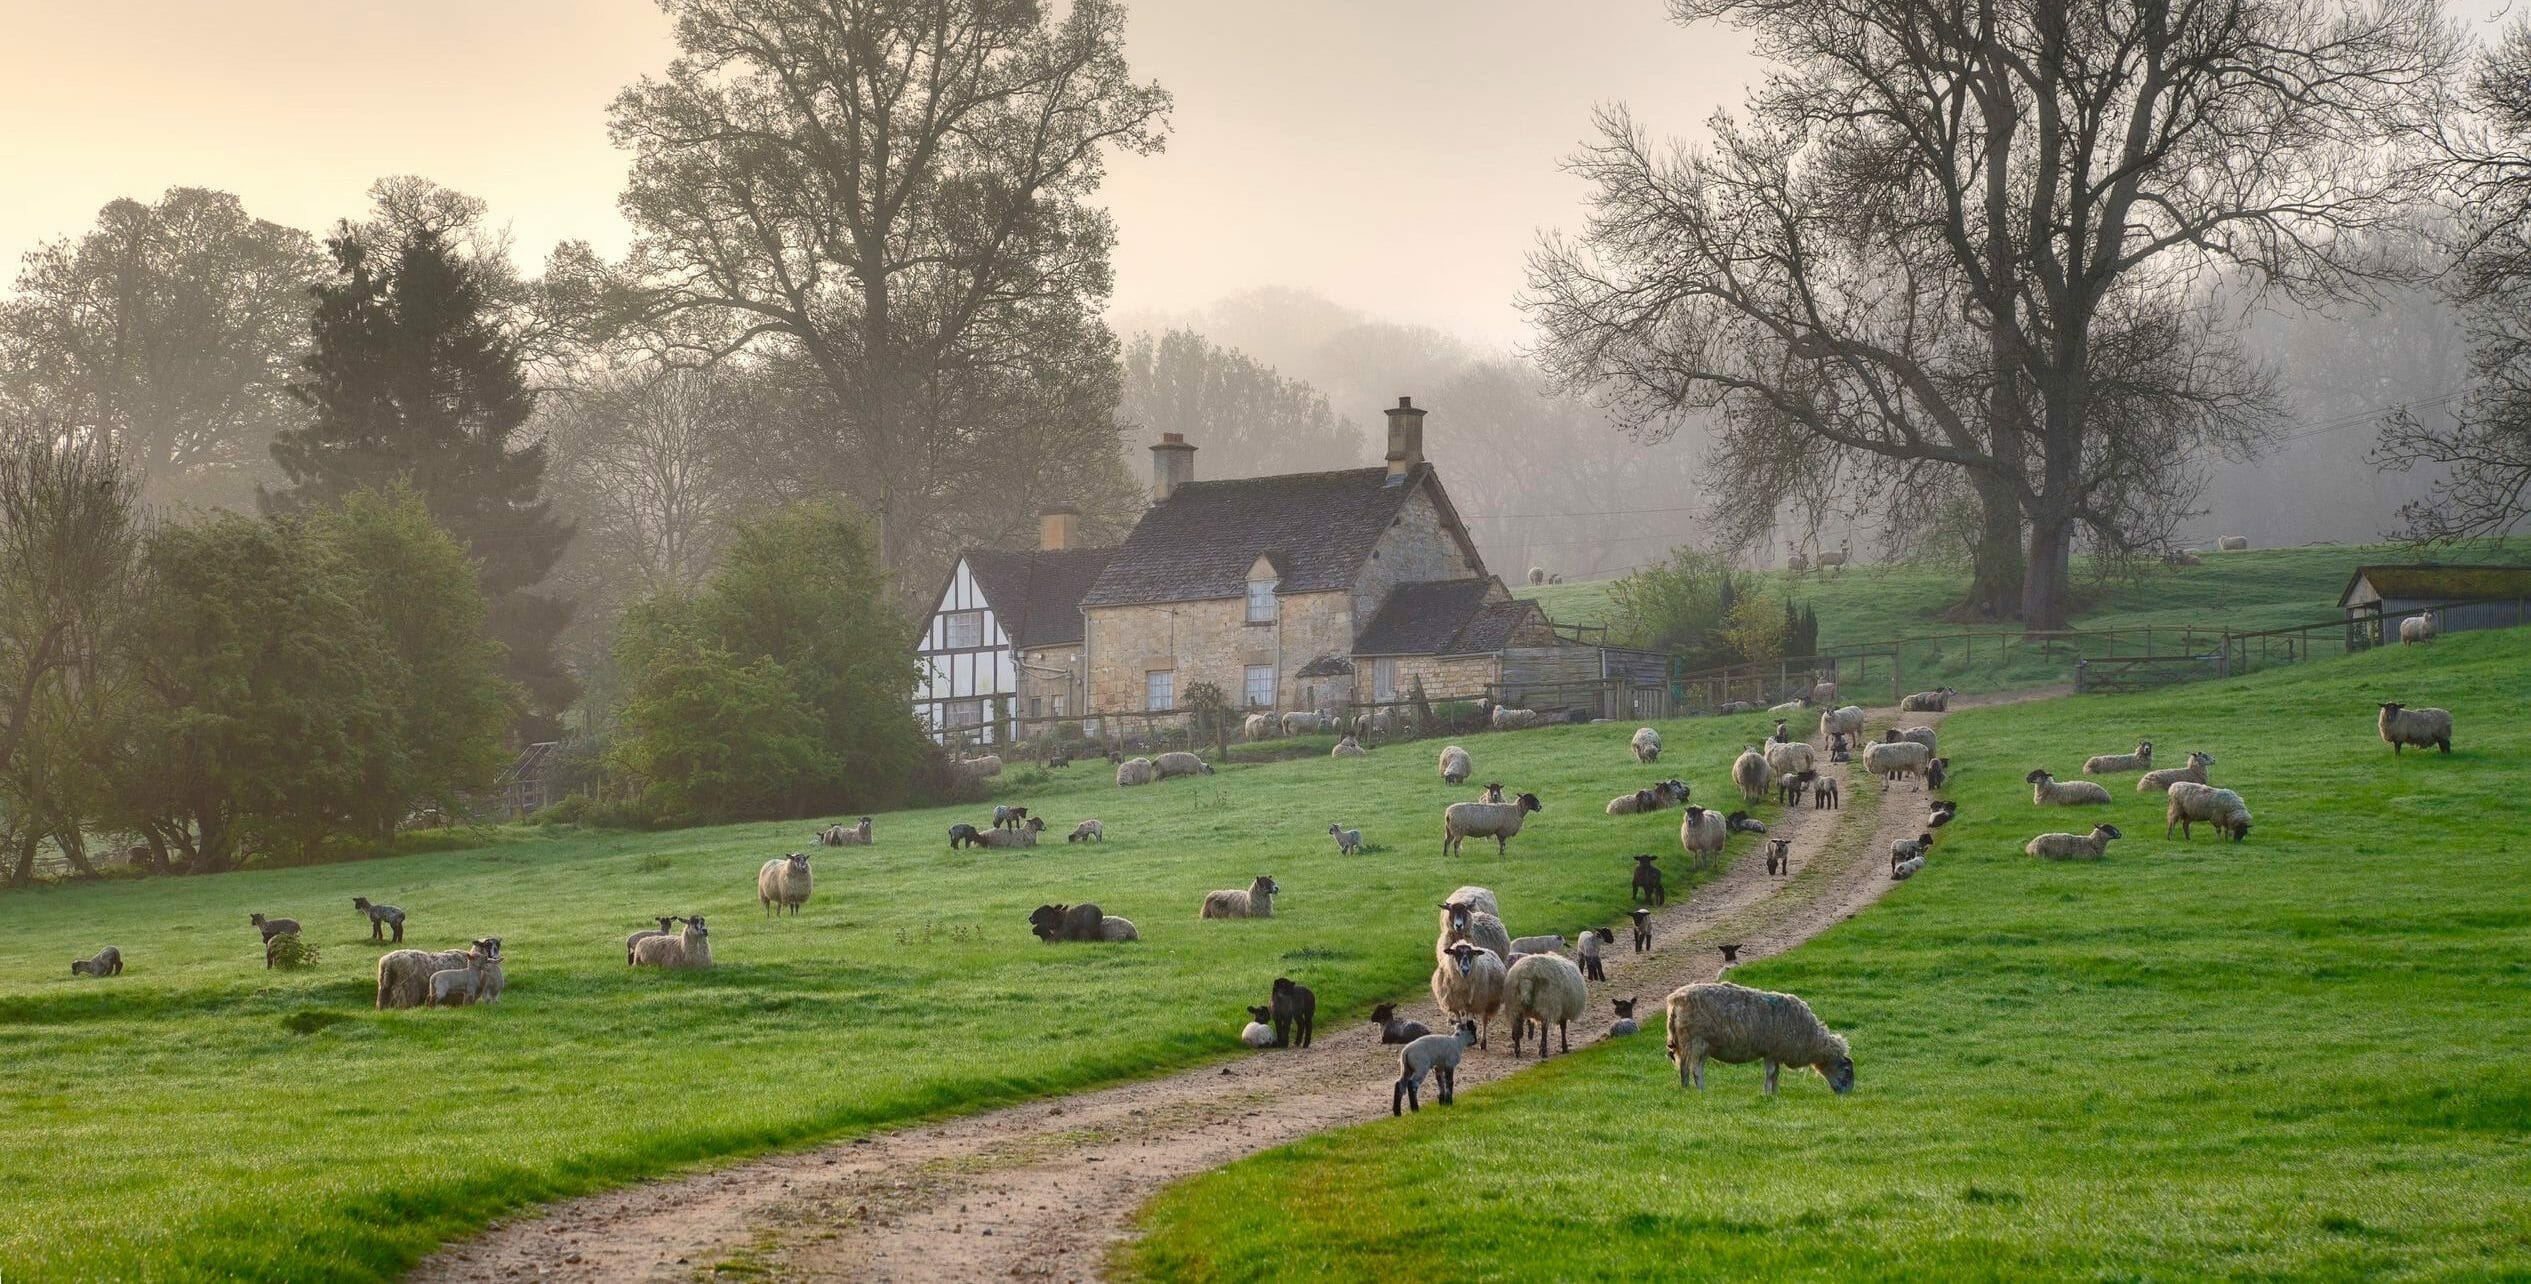 The countryside is beautiful. Котсуолдс Англия. Котсуолдс Англия ферма. Сельская местность в Англии Котсуолд. Ферма в Англии Глостершир.